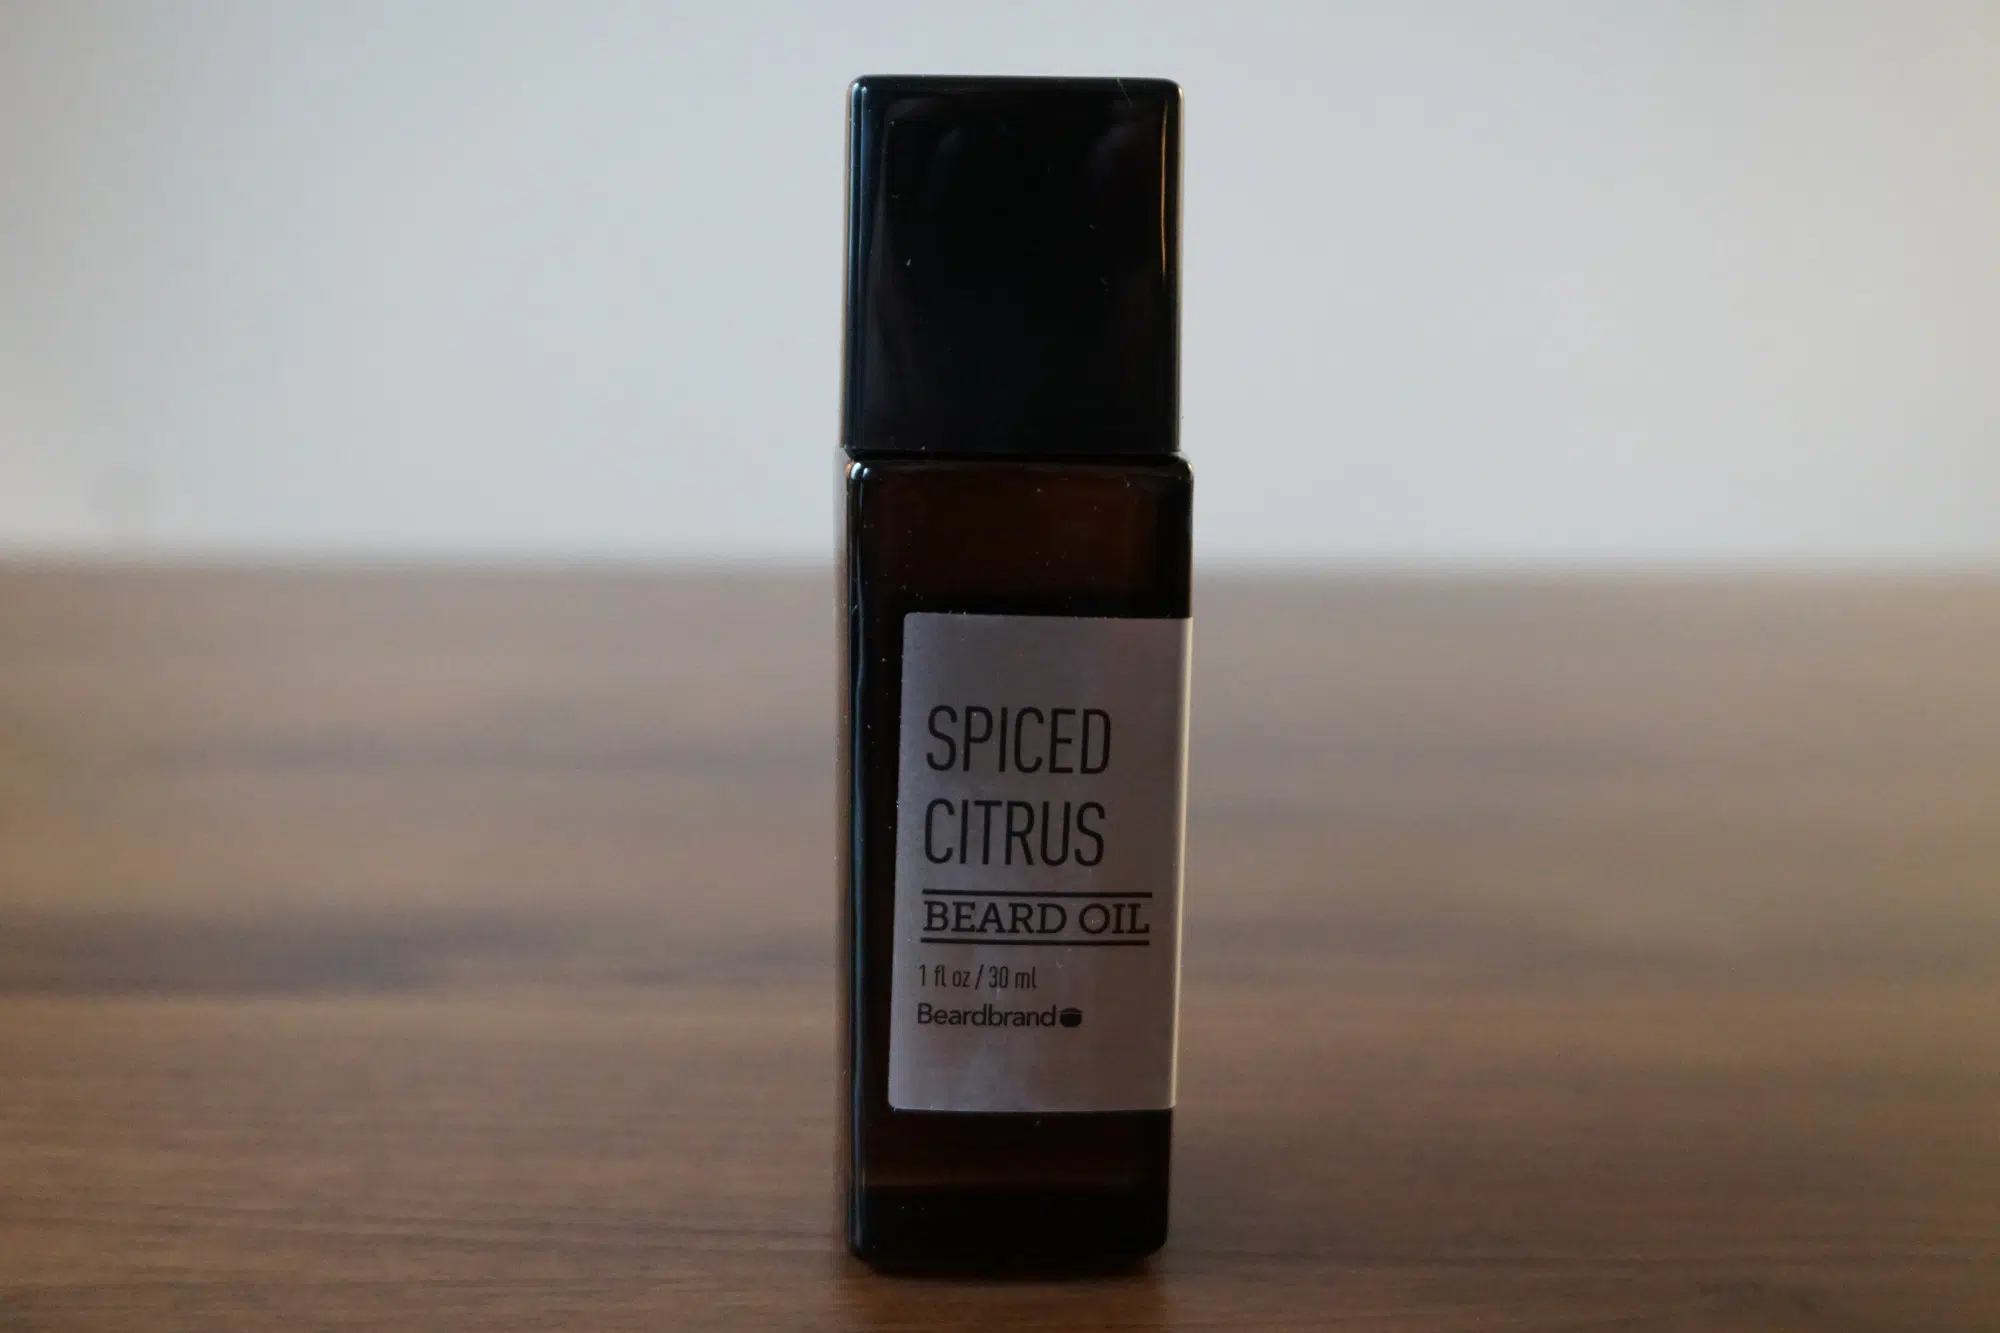 Beardbrand spiced citrus beard oil